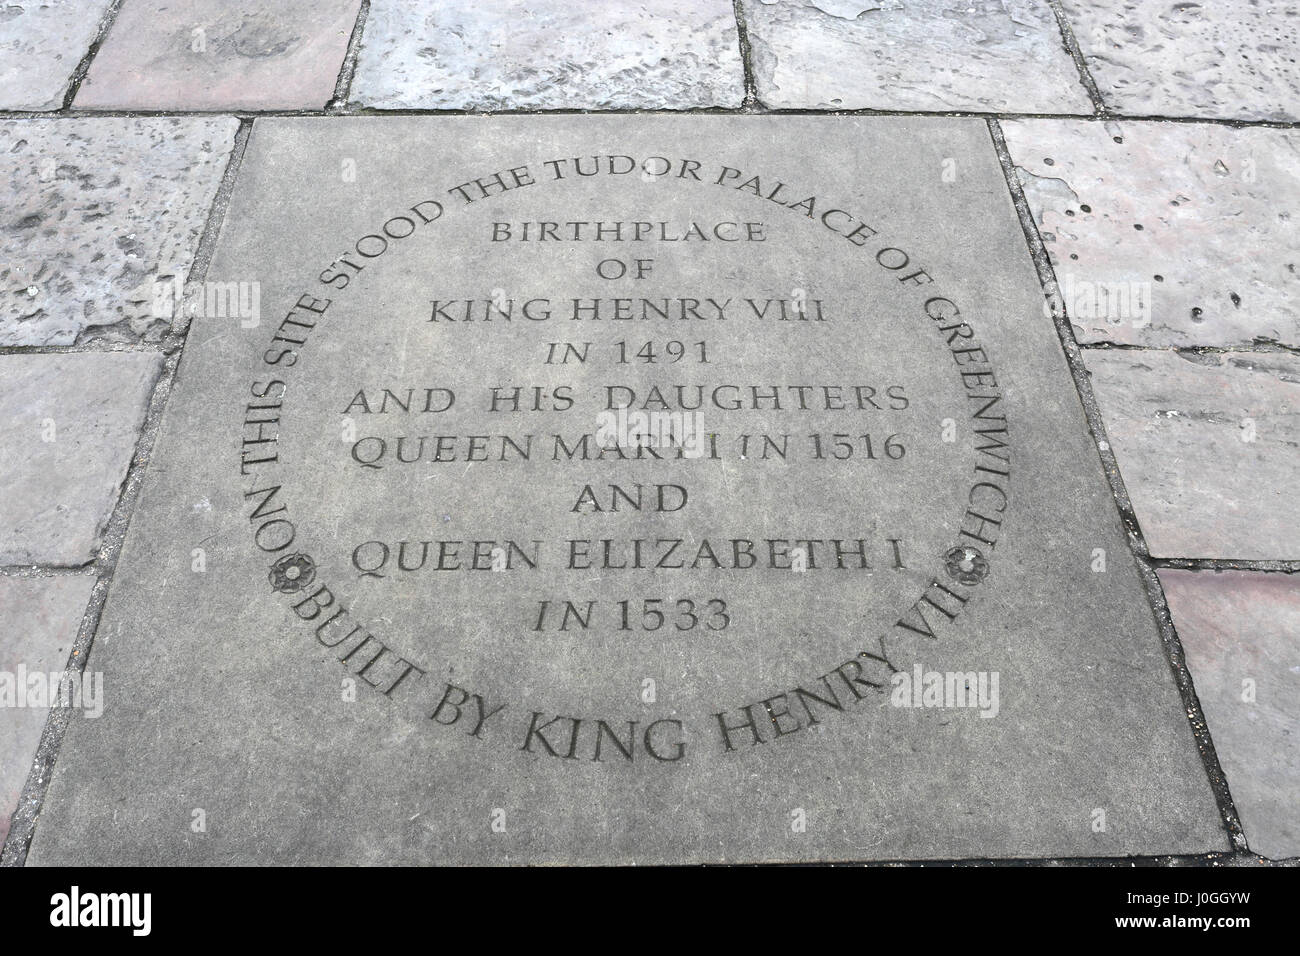 La placca del luogo di nascita di Re Enrico VIII nel 1491 e le sue figlie Queen Mary i nel 1516 e la regina Elisabetta I nel 1533, old Royal naval College, gra Foto Stock